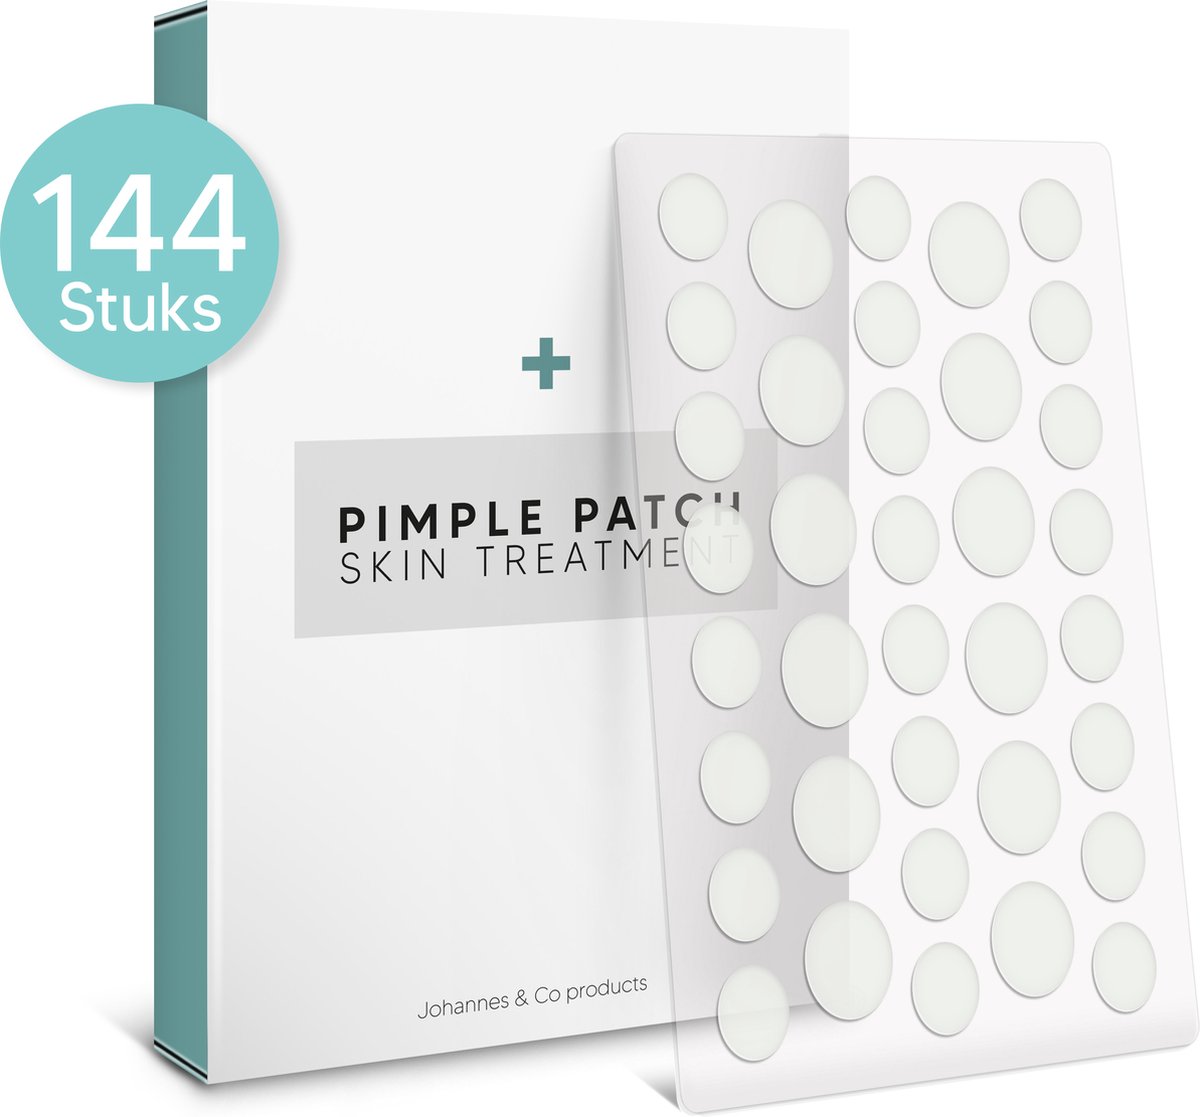 Johannes & Co pimple patches - Acne pleister - Puisten verwijderaar - Pimple patch - Acne patch 144 stuks